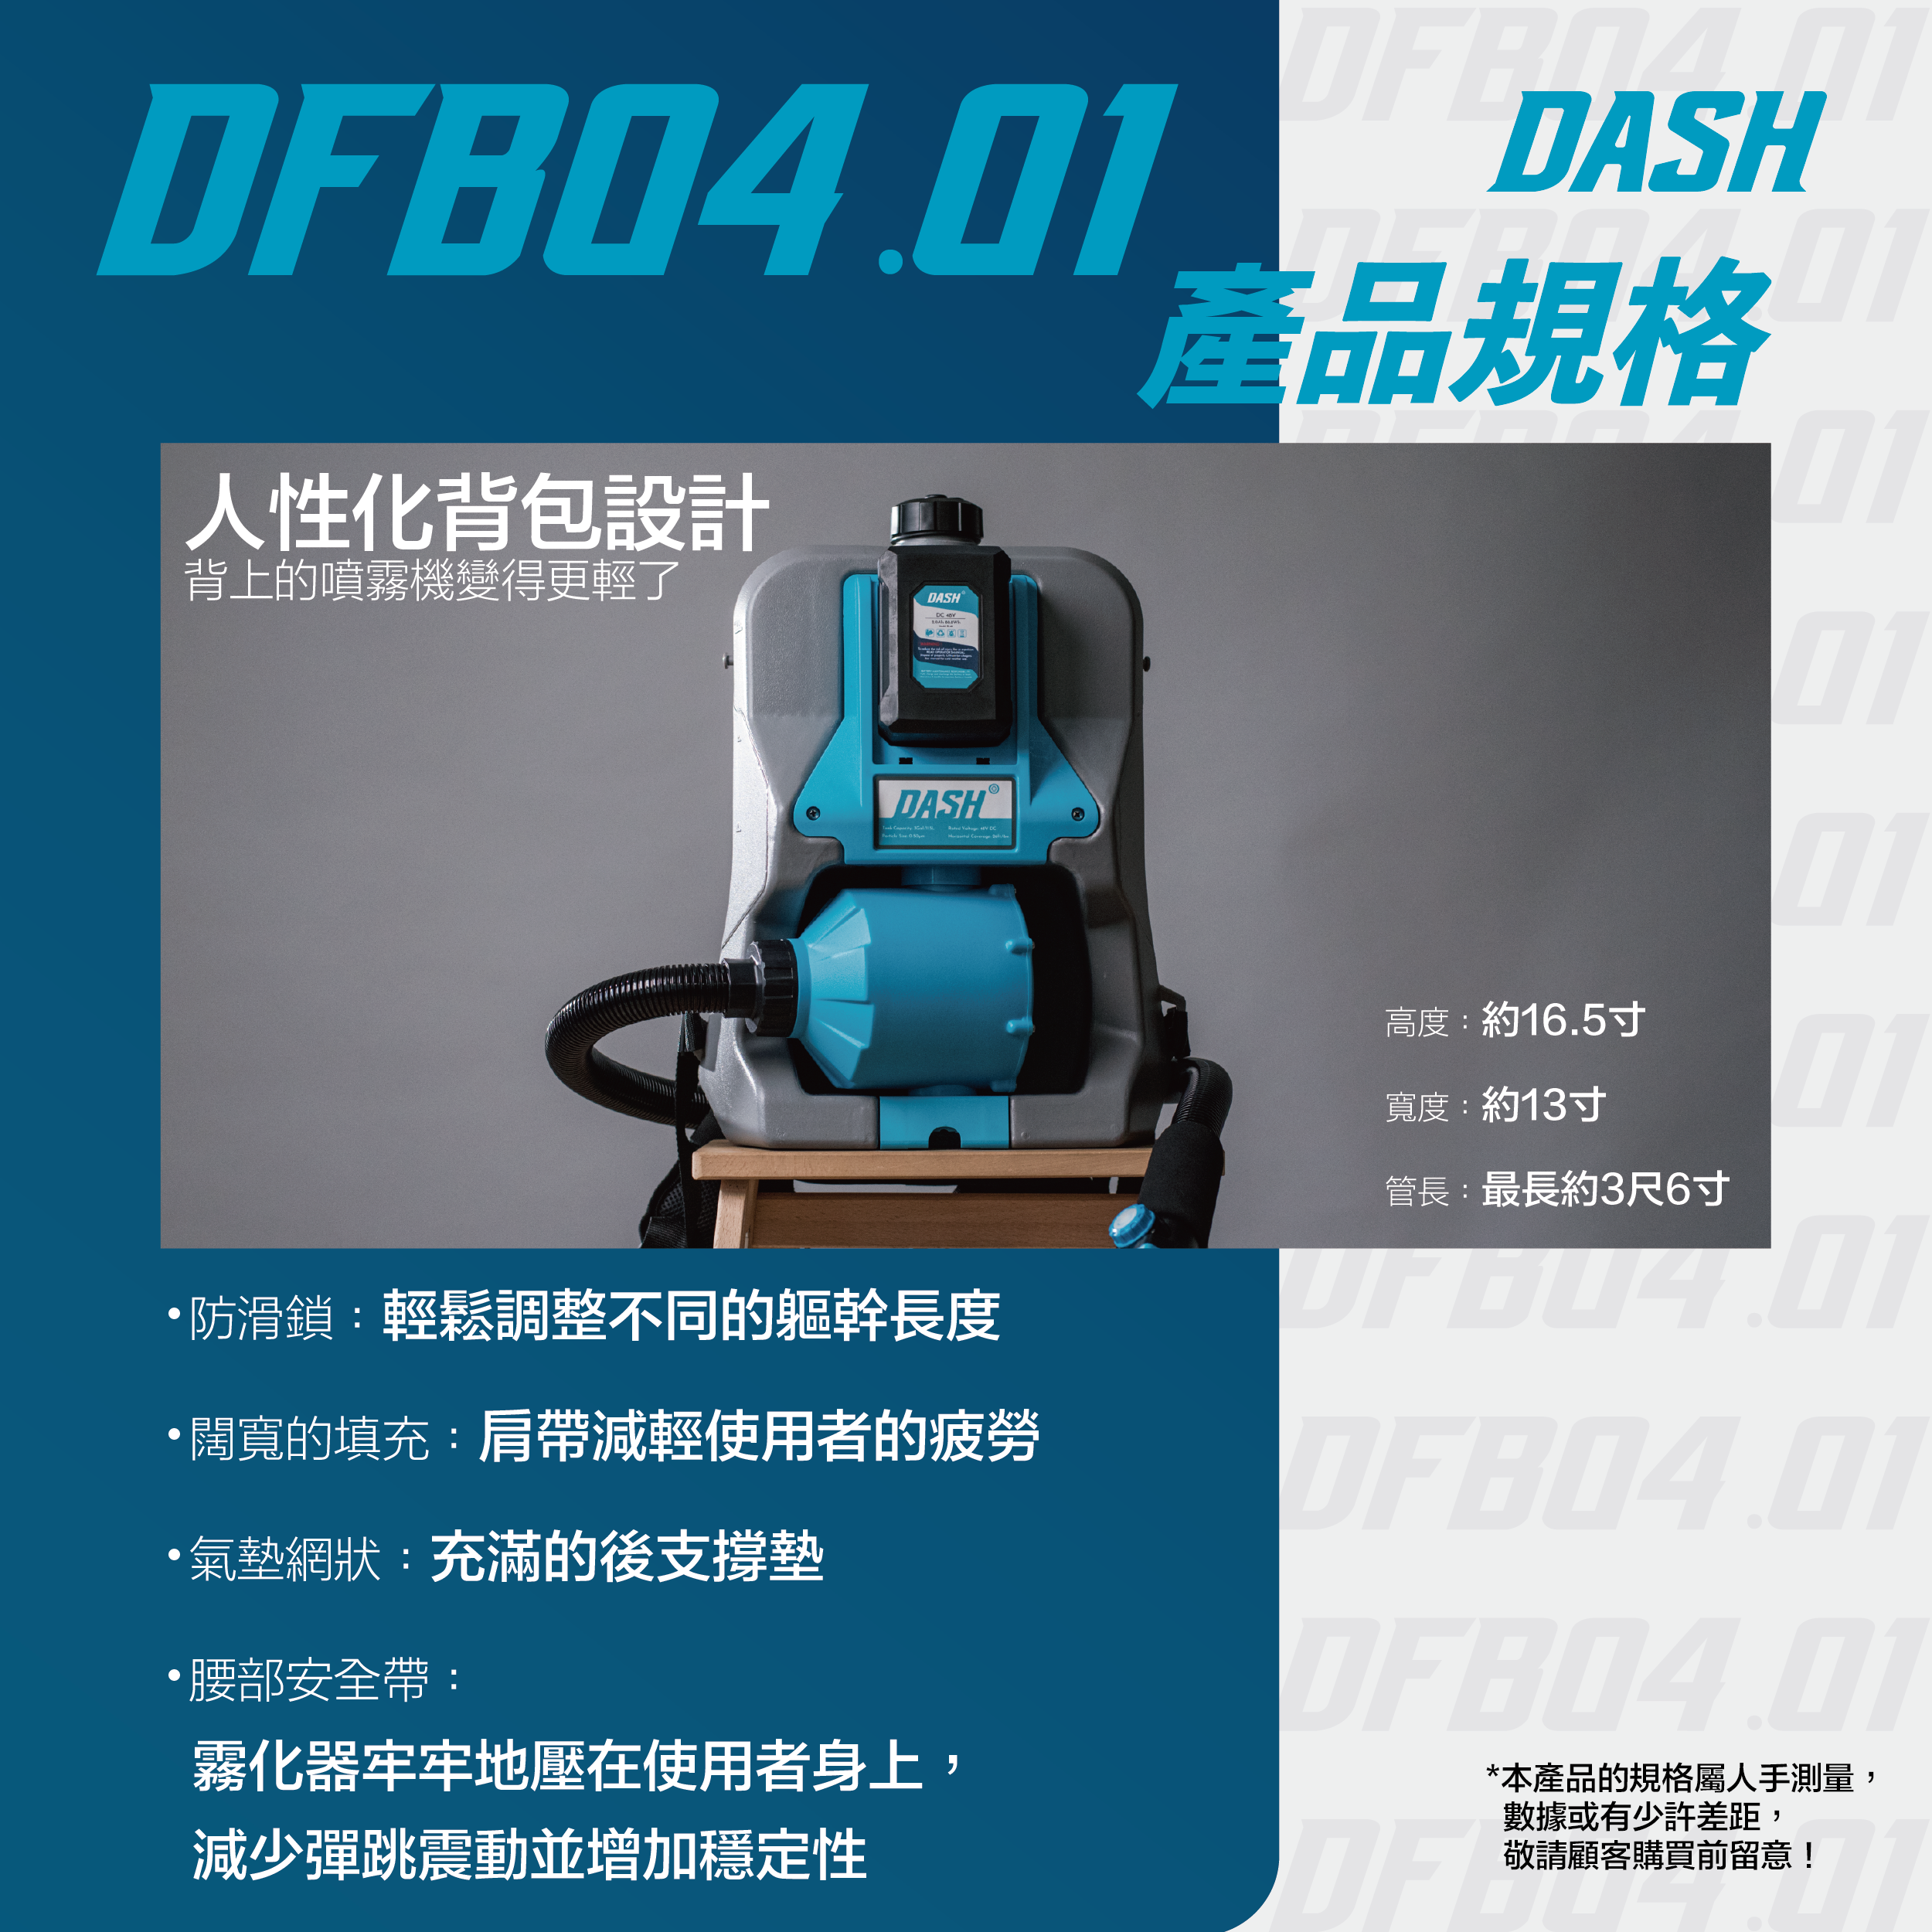 DASH DFB04.01 Knapsack Particle Disinfection Gun